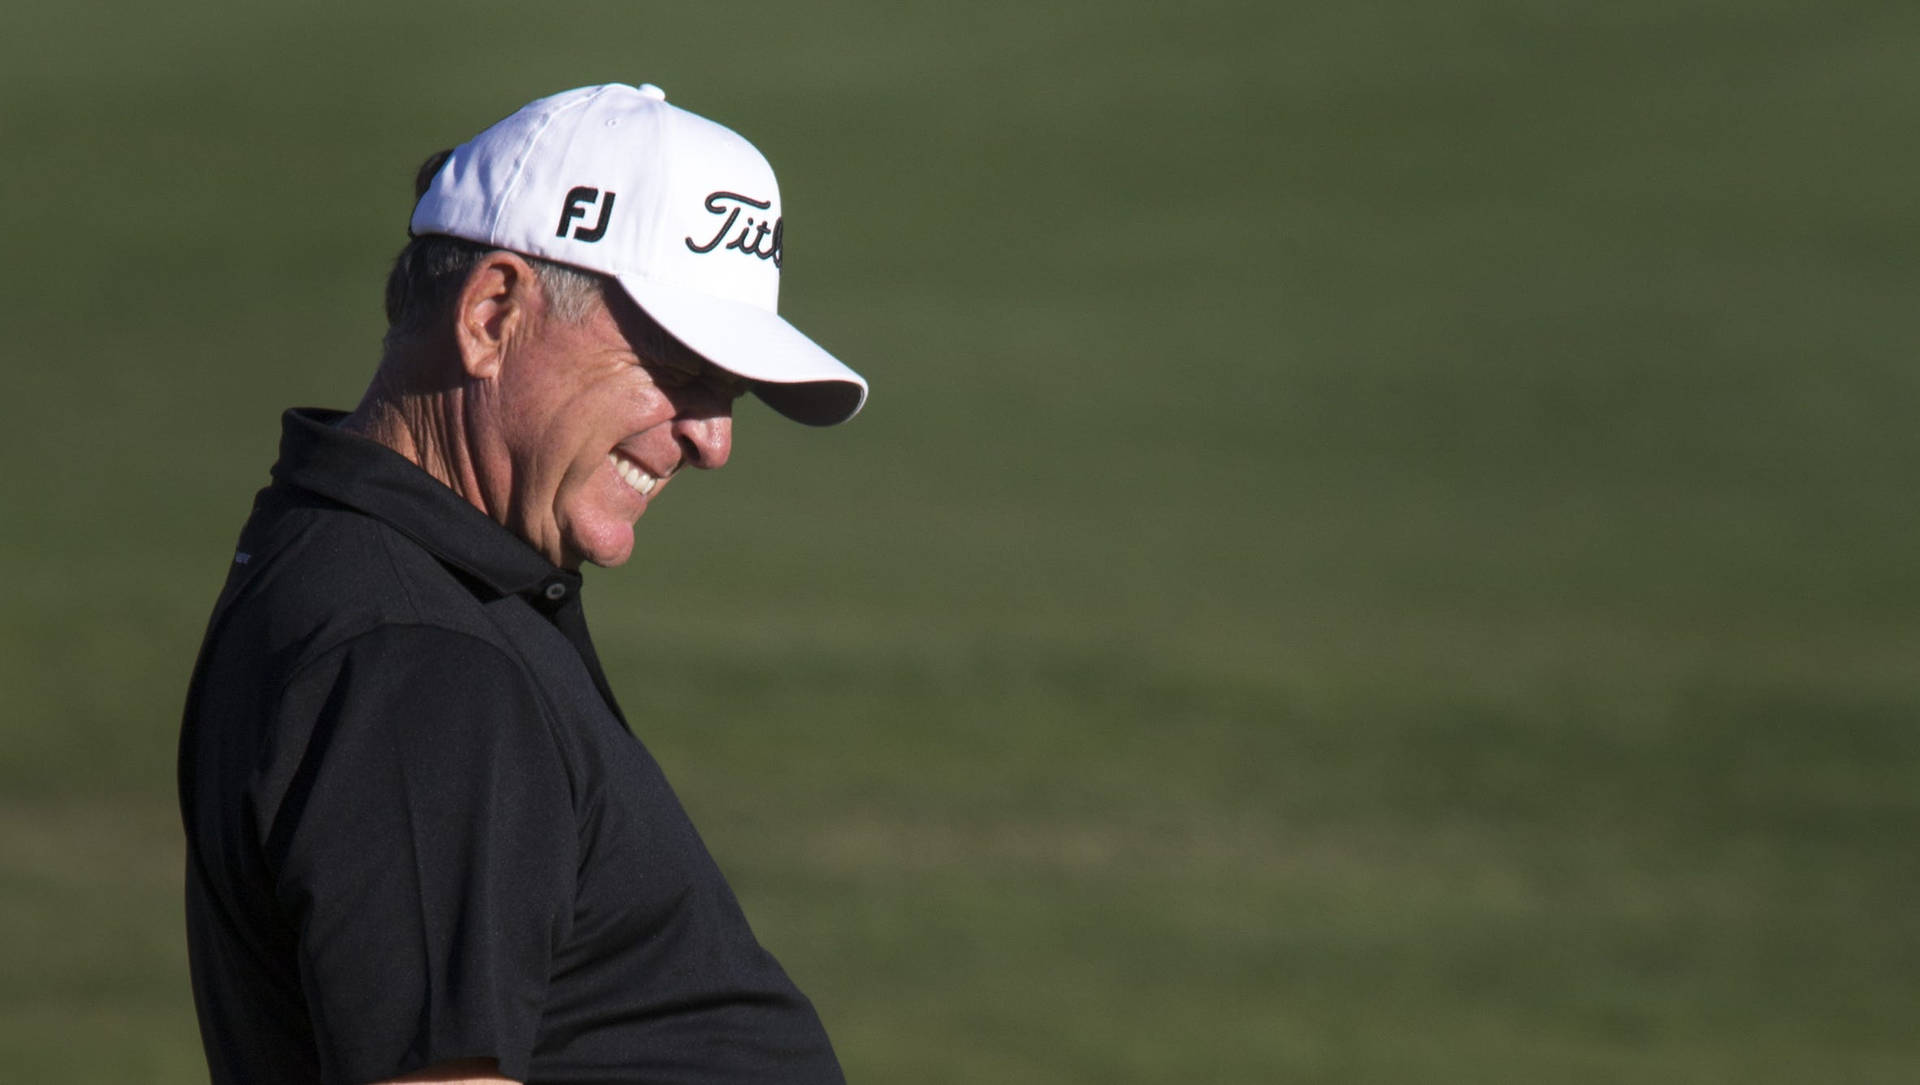 Jayhaas Sonriendo Durante Un Evento De Golf Fondo de pantalla